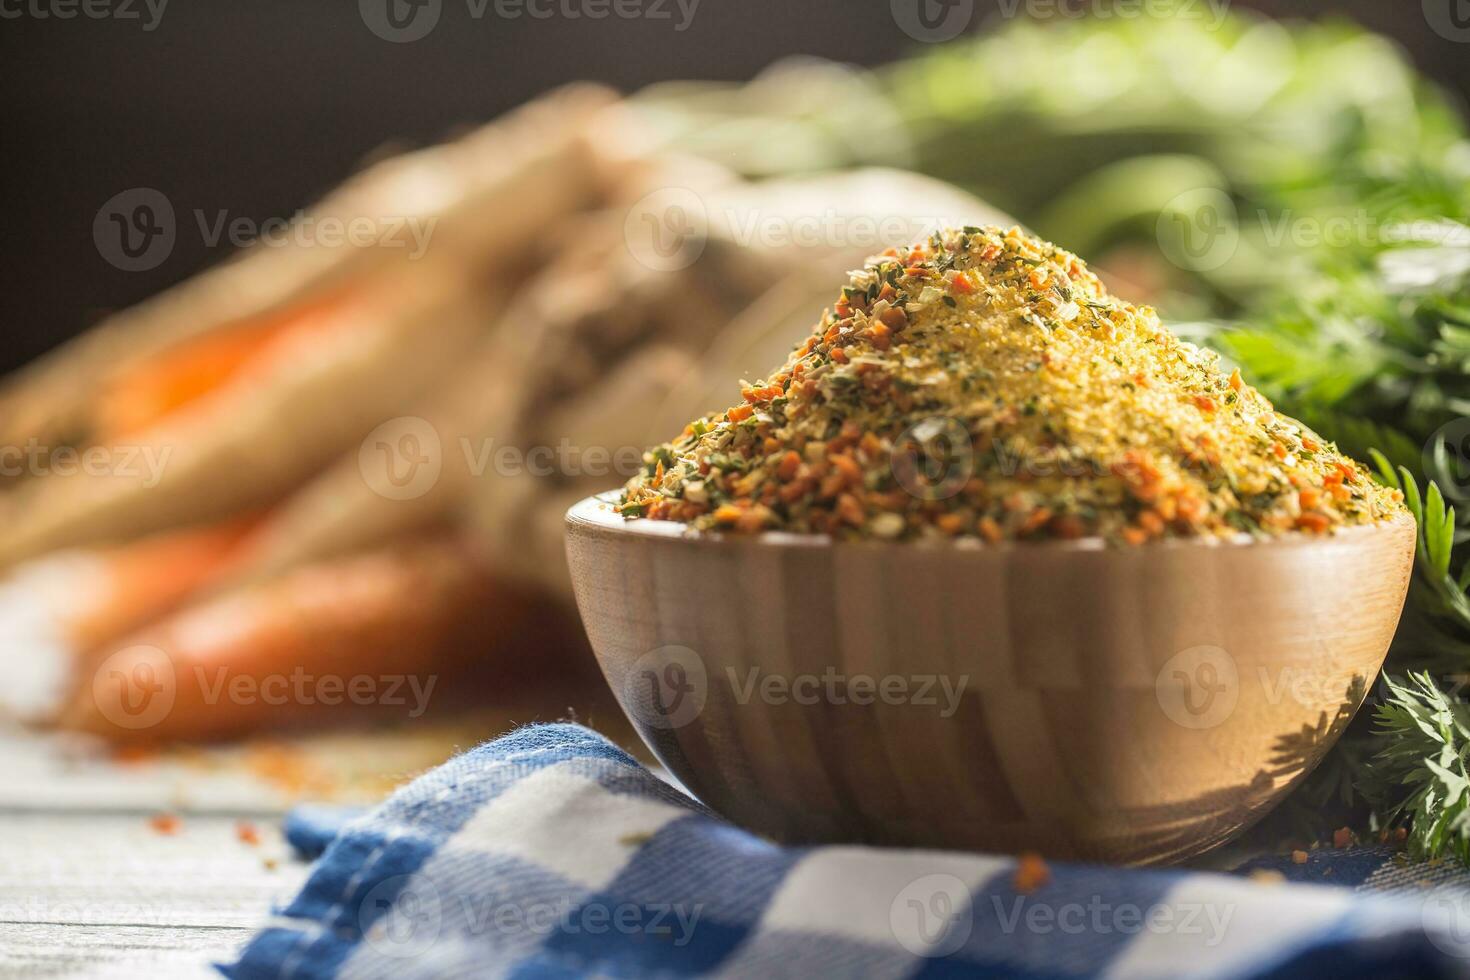 kruiderij specerijen kruiderij vegetarisch van uitgedroogd wortel peterselie selderij pastinaak en zout met of zonder glutamaat foto